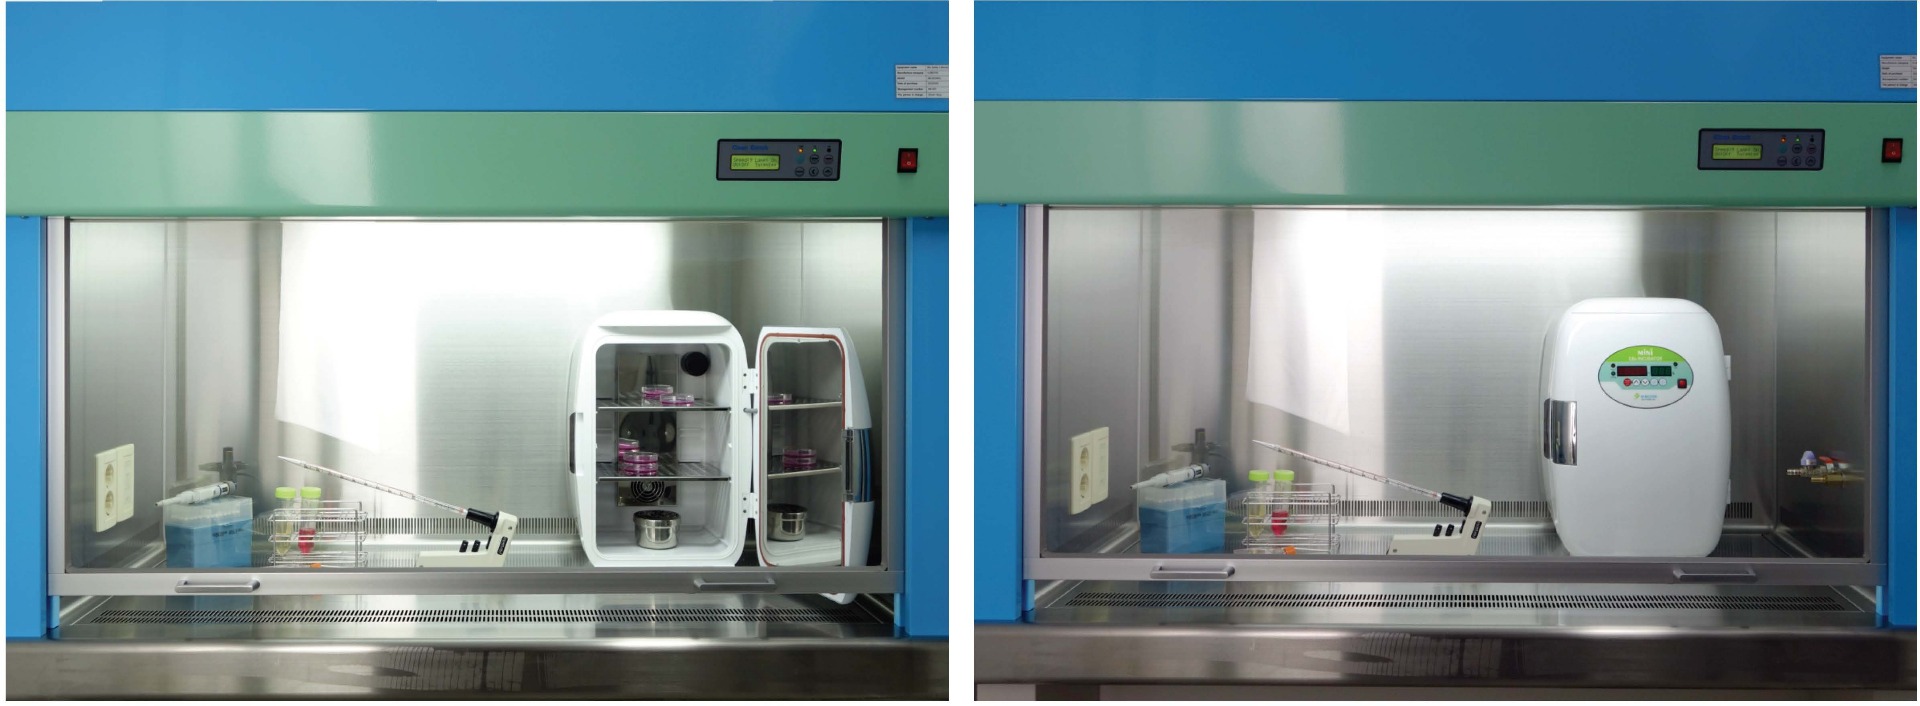 minico2 incubator in biosafety cabinet